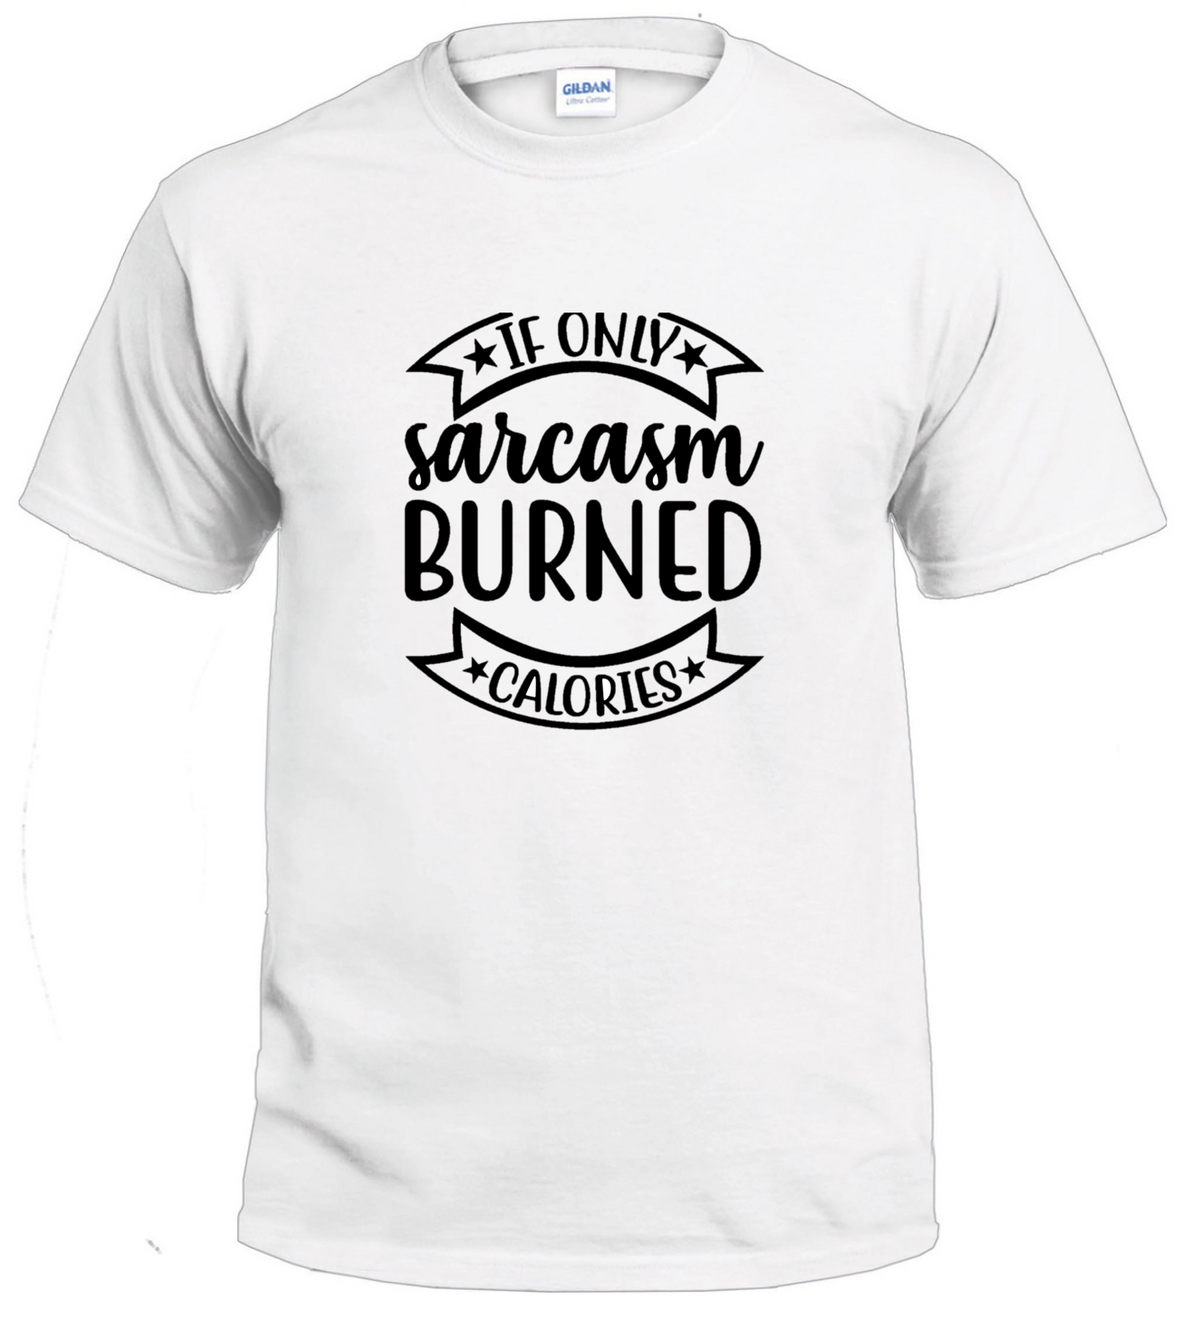 If Only Sarcasm Burned Calories Sarcasm t-shirt